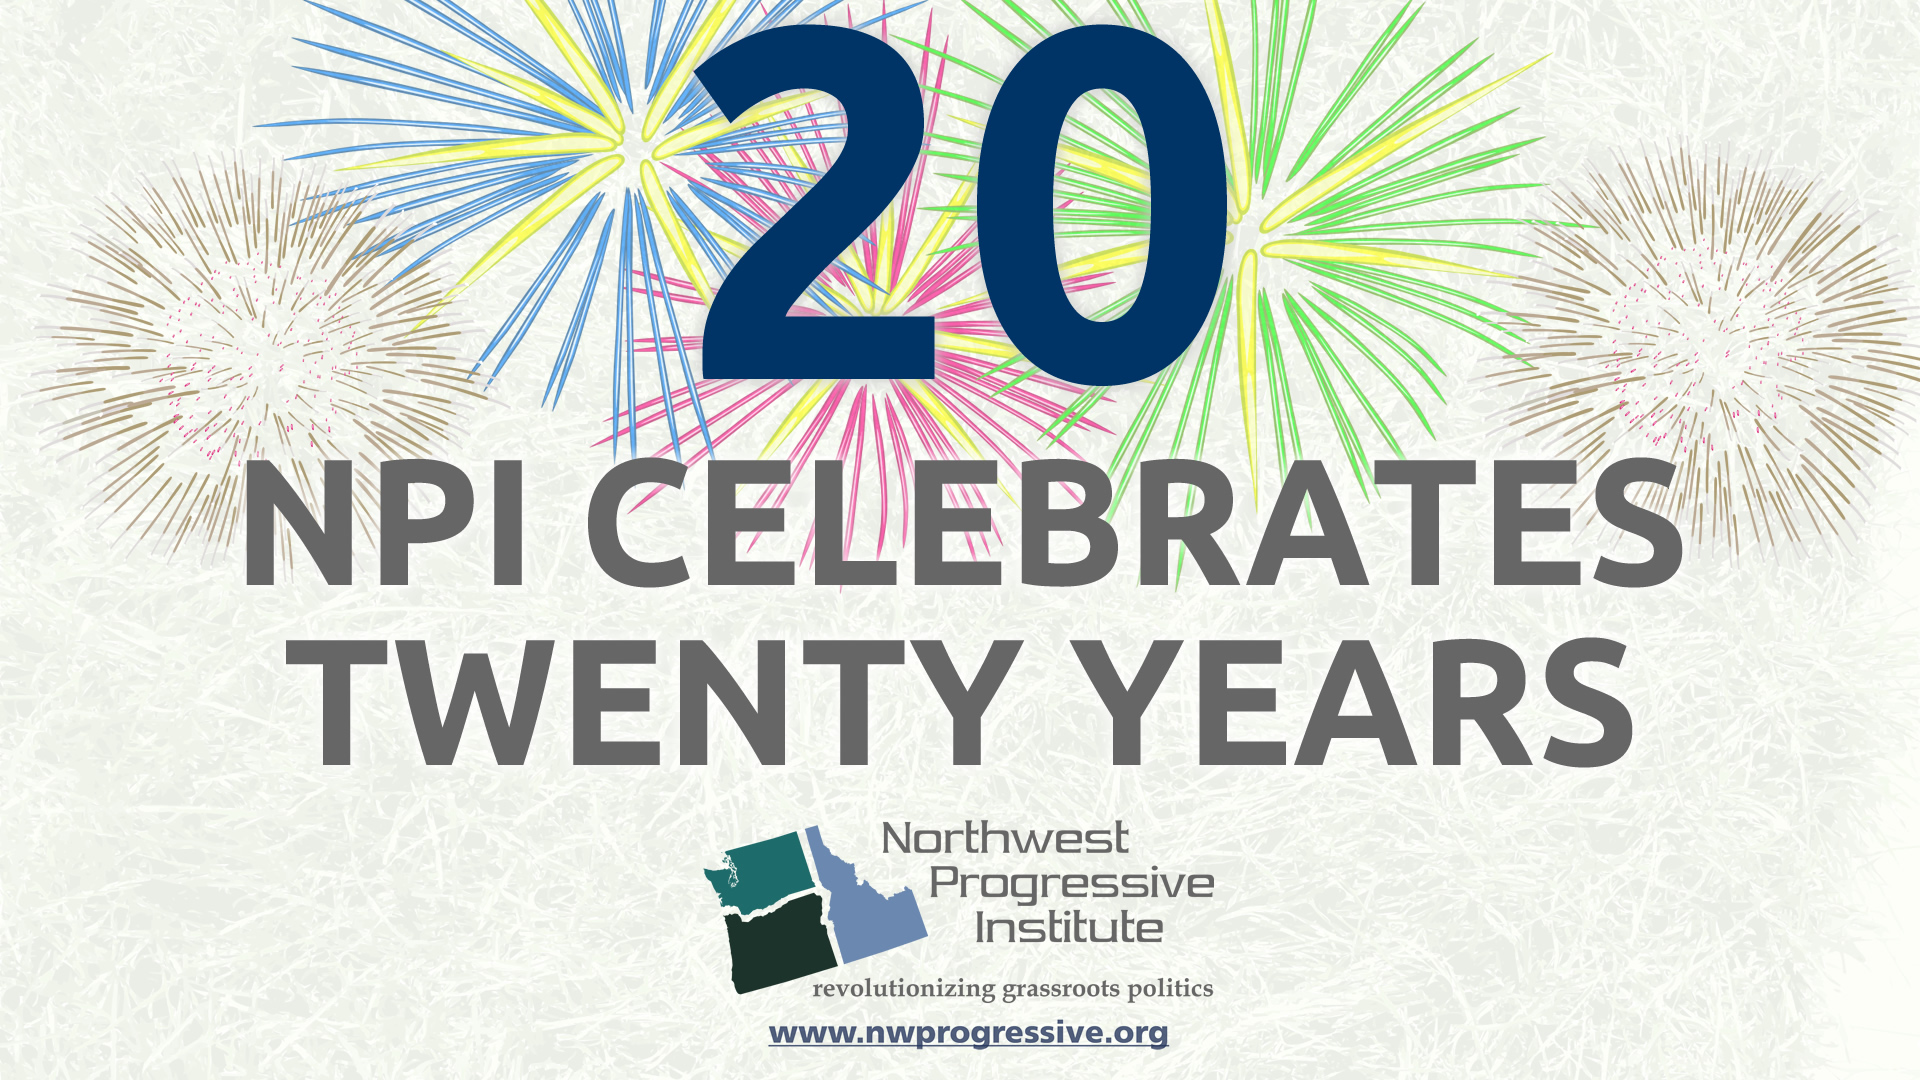 NPI celebrates twenty years